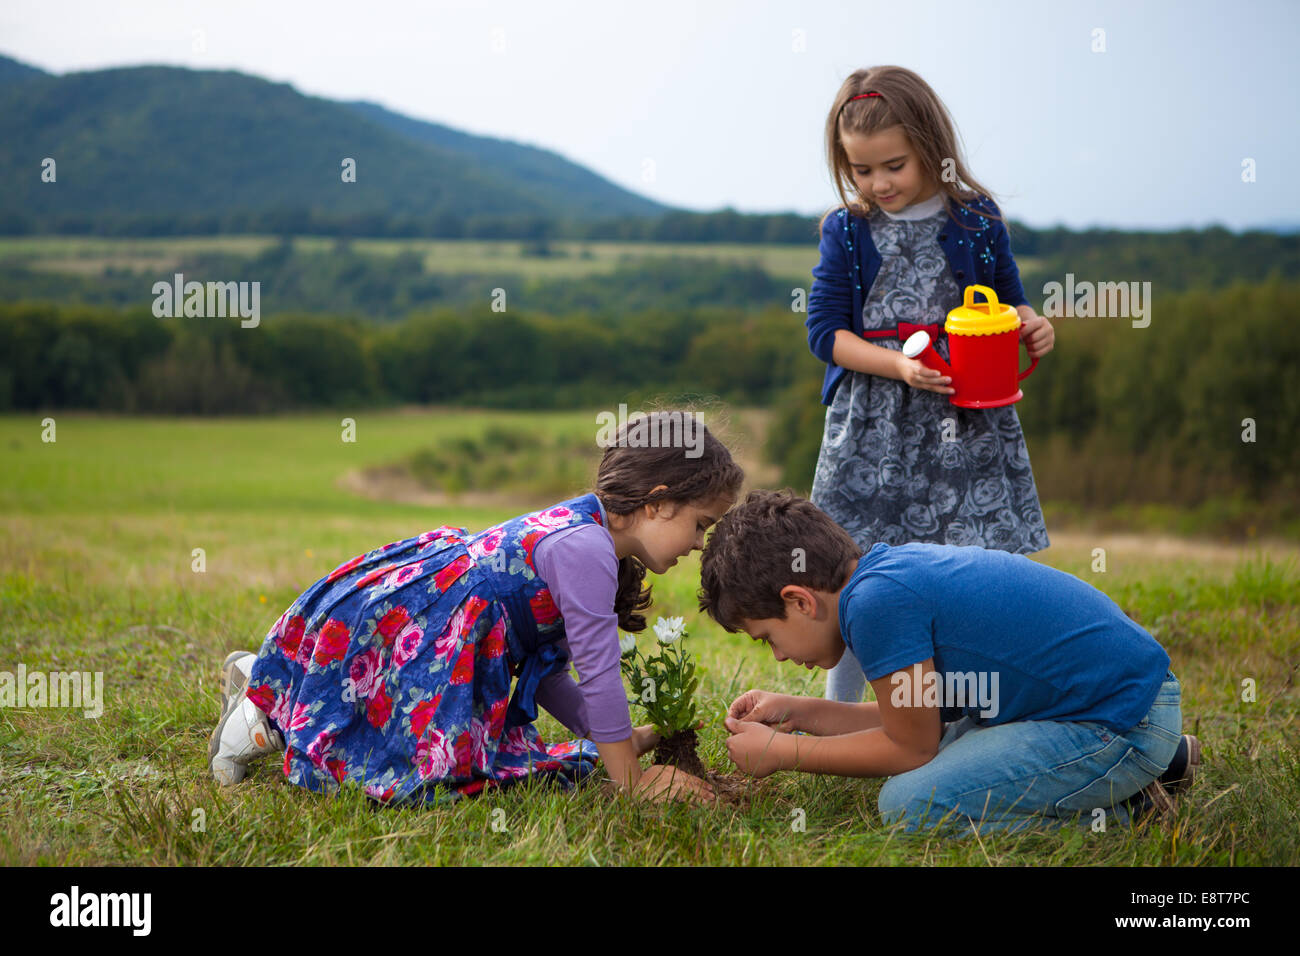 Les enfants le jardinage et arrosage des plantes avec un arrosoir plastique jouet Banque D'Images